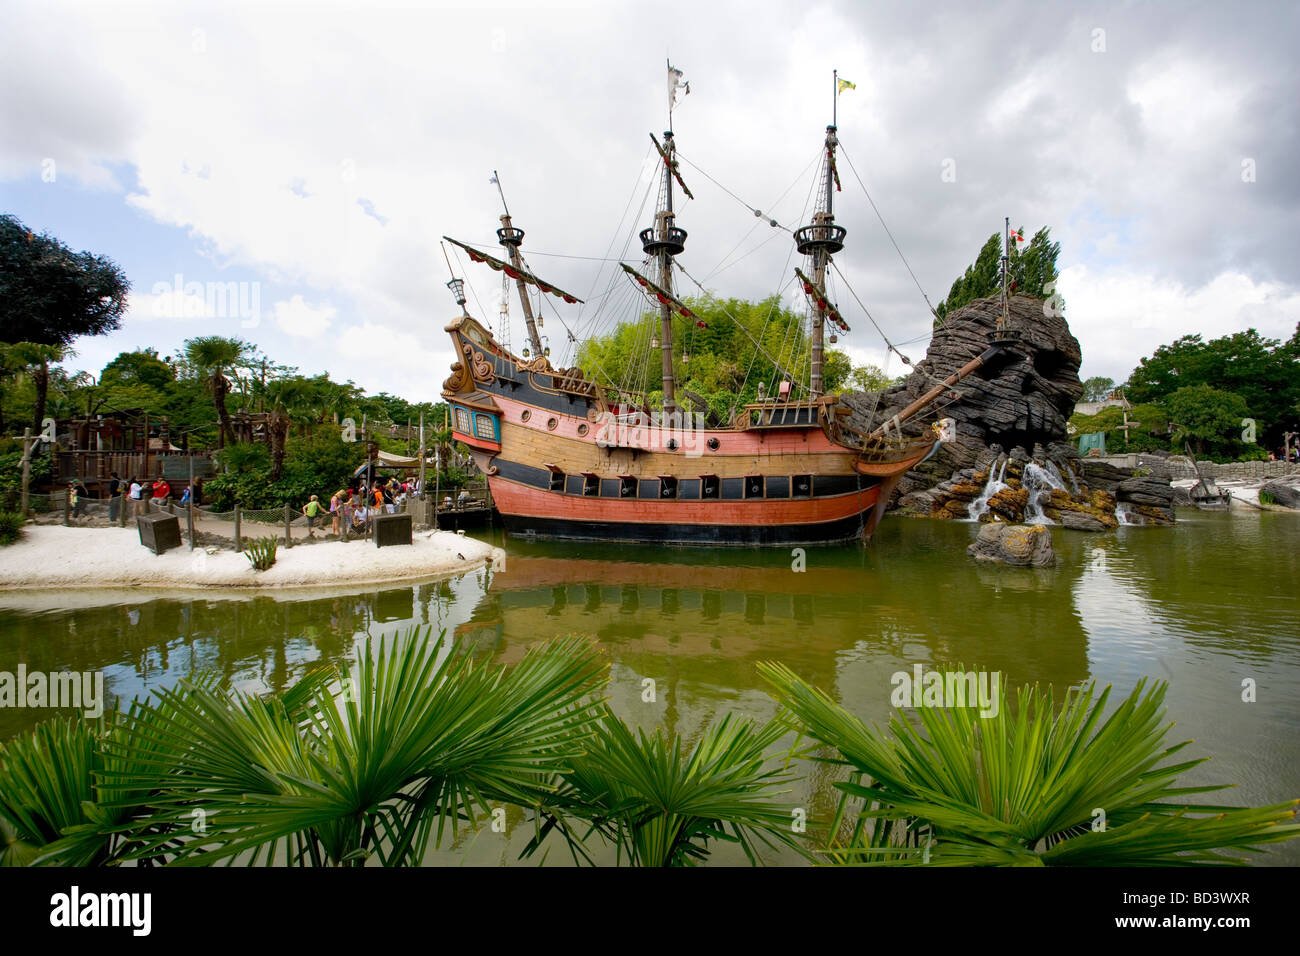 Pirates Cove in Adventureland, Disneyland Paris, France Stock Photo